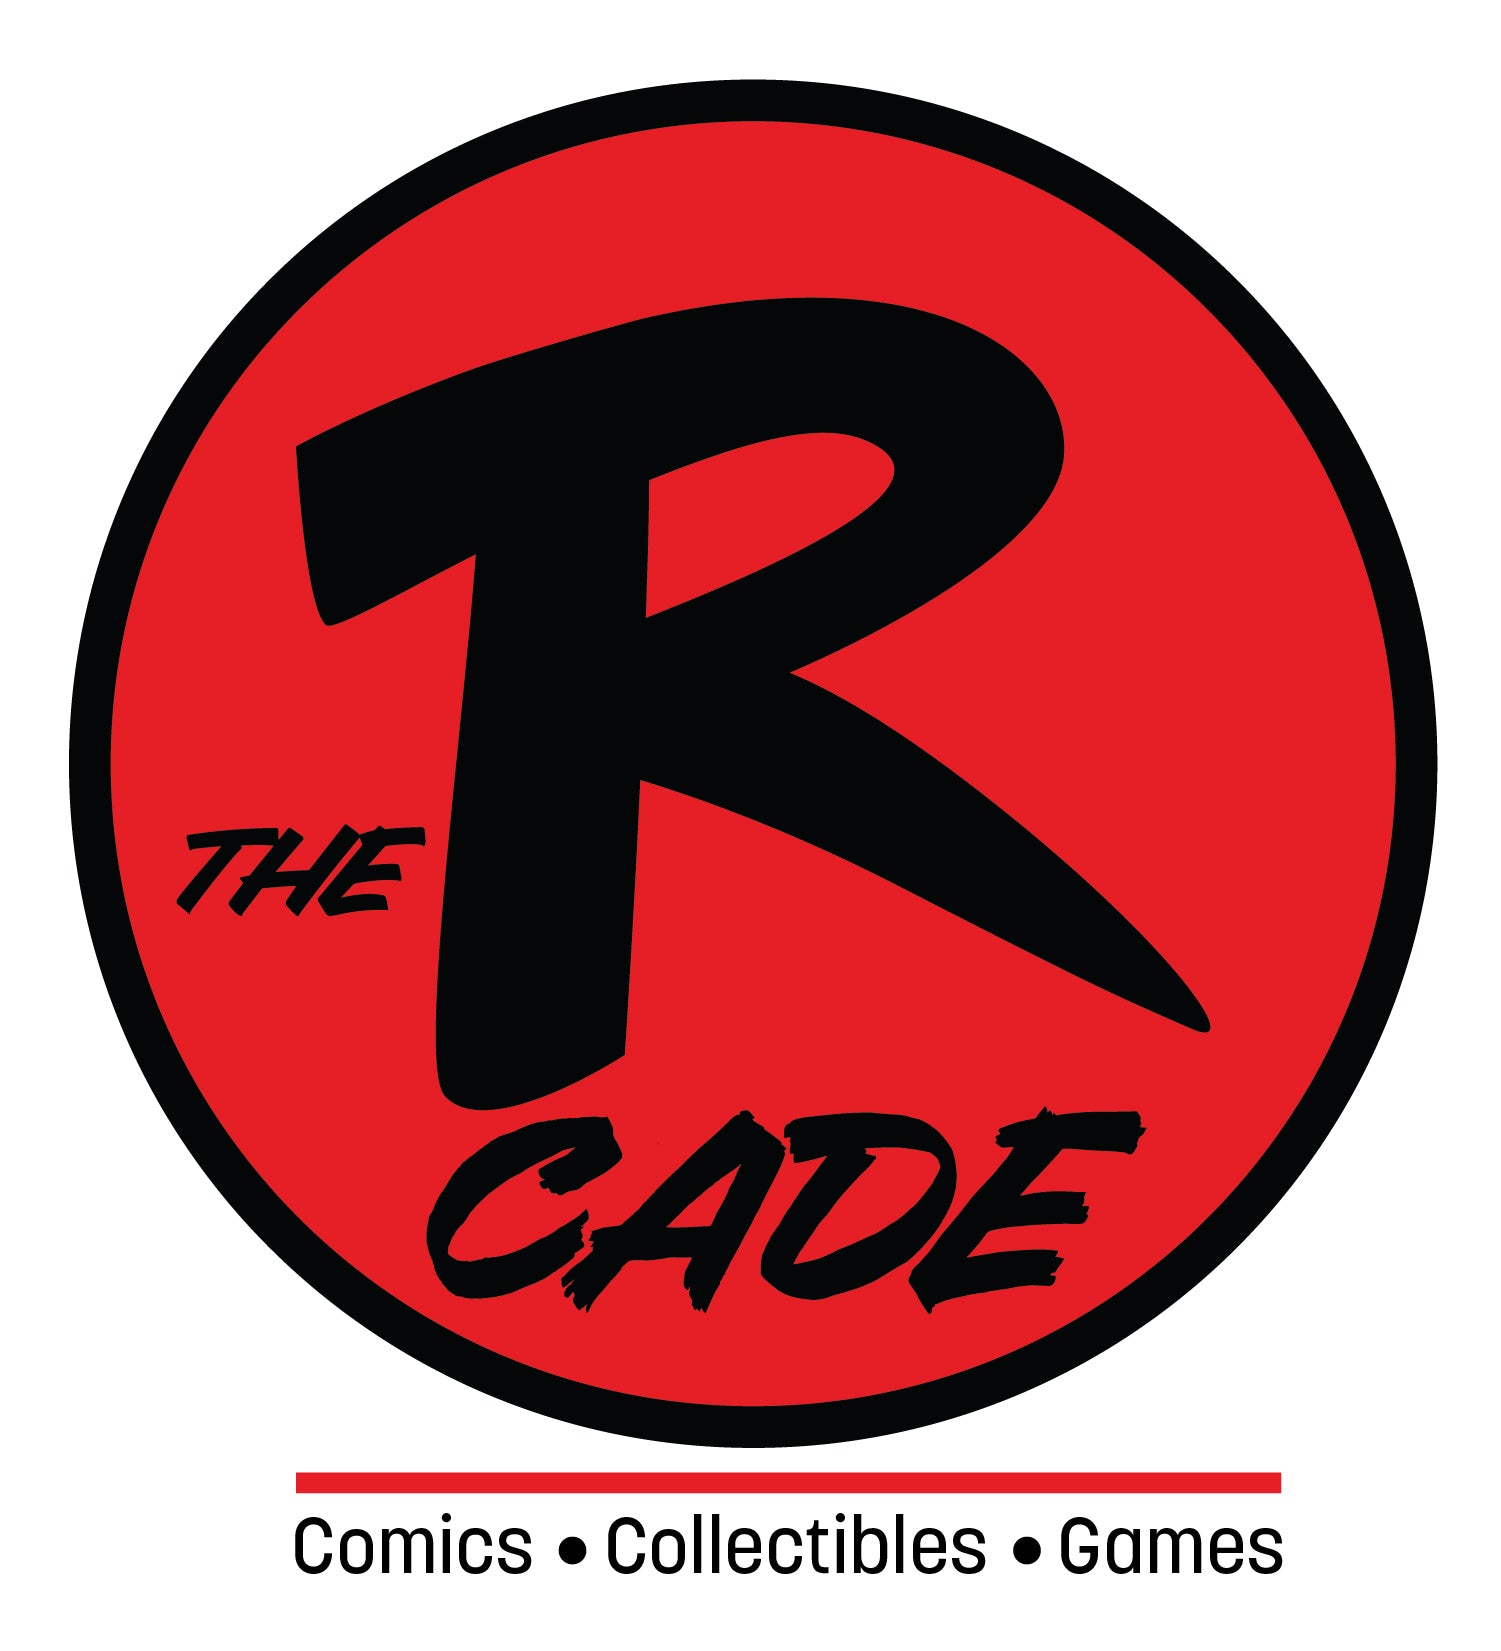 The Rcade Comics